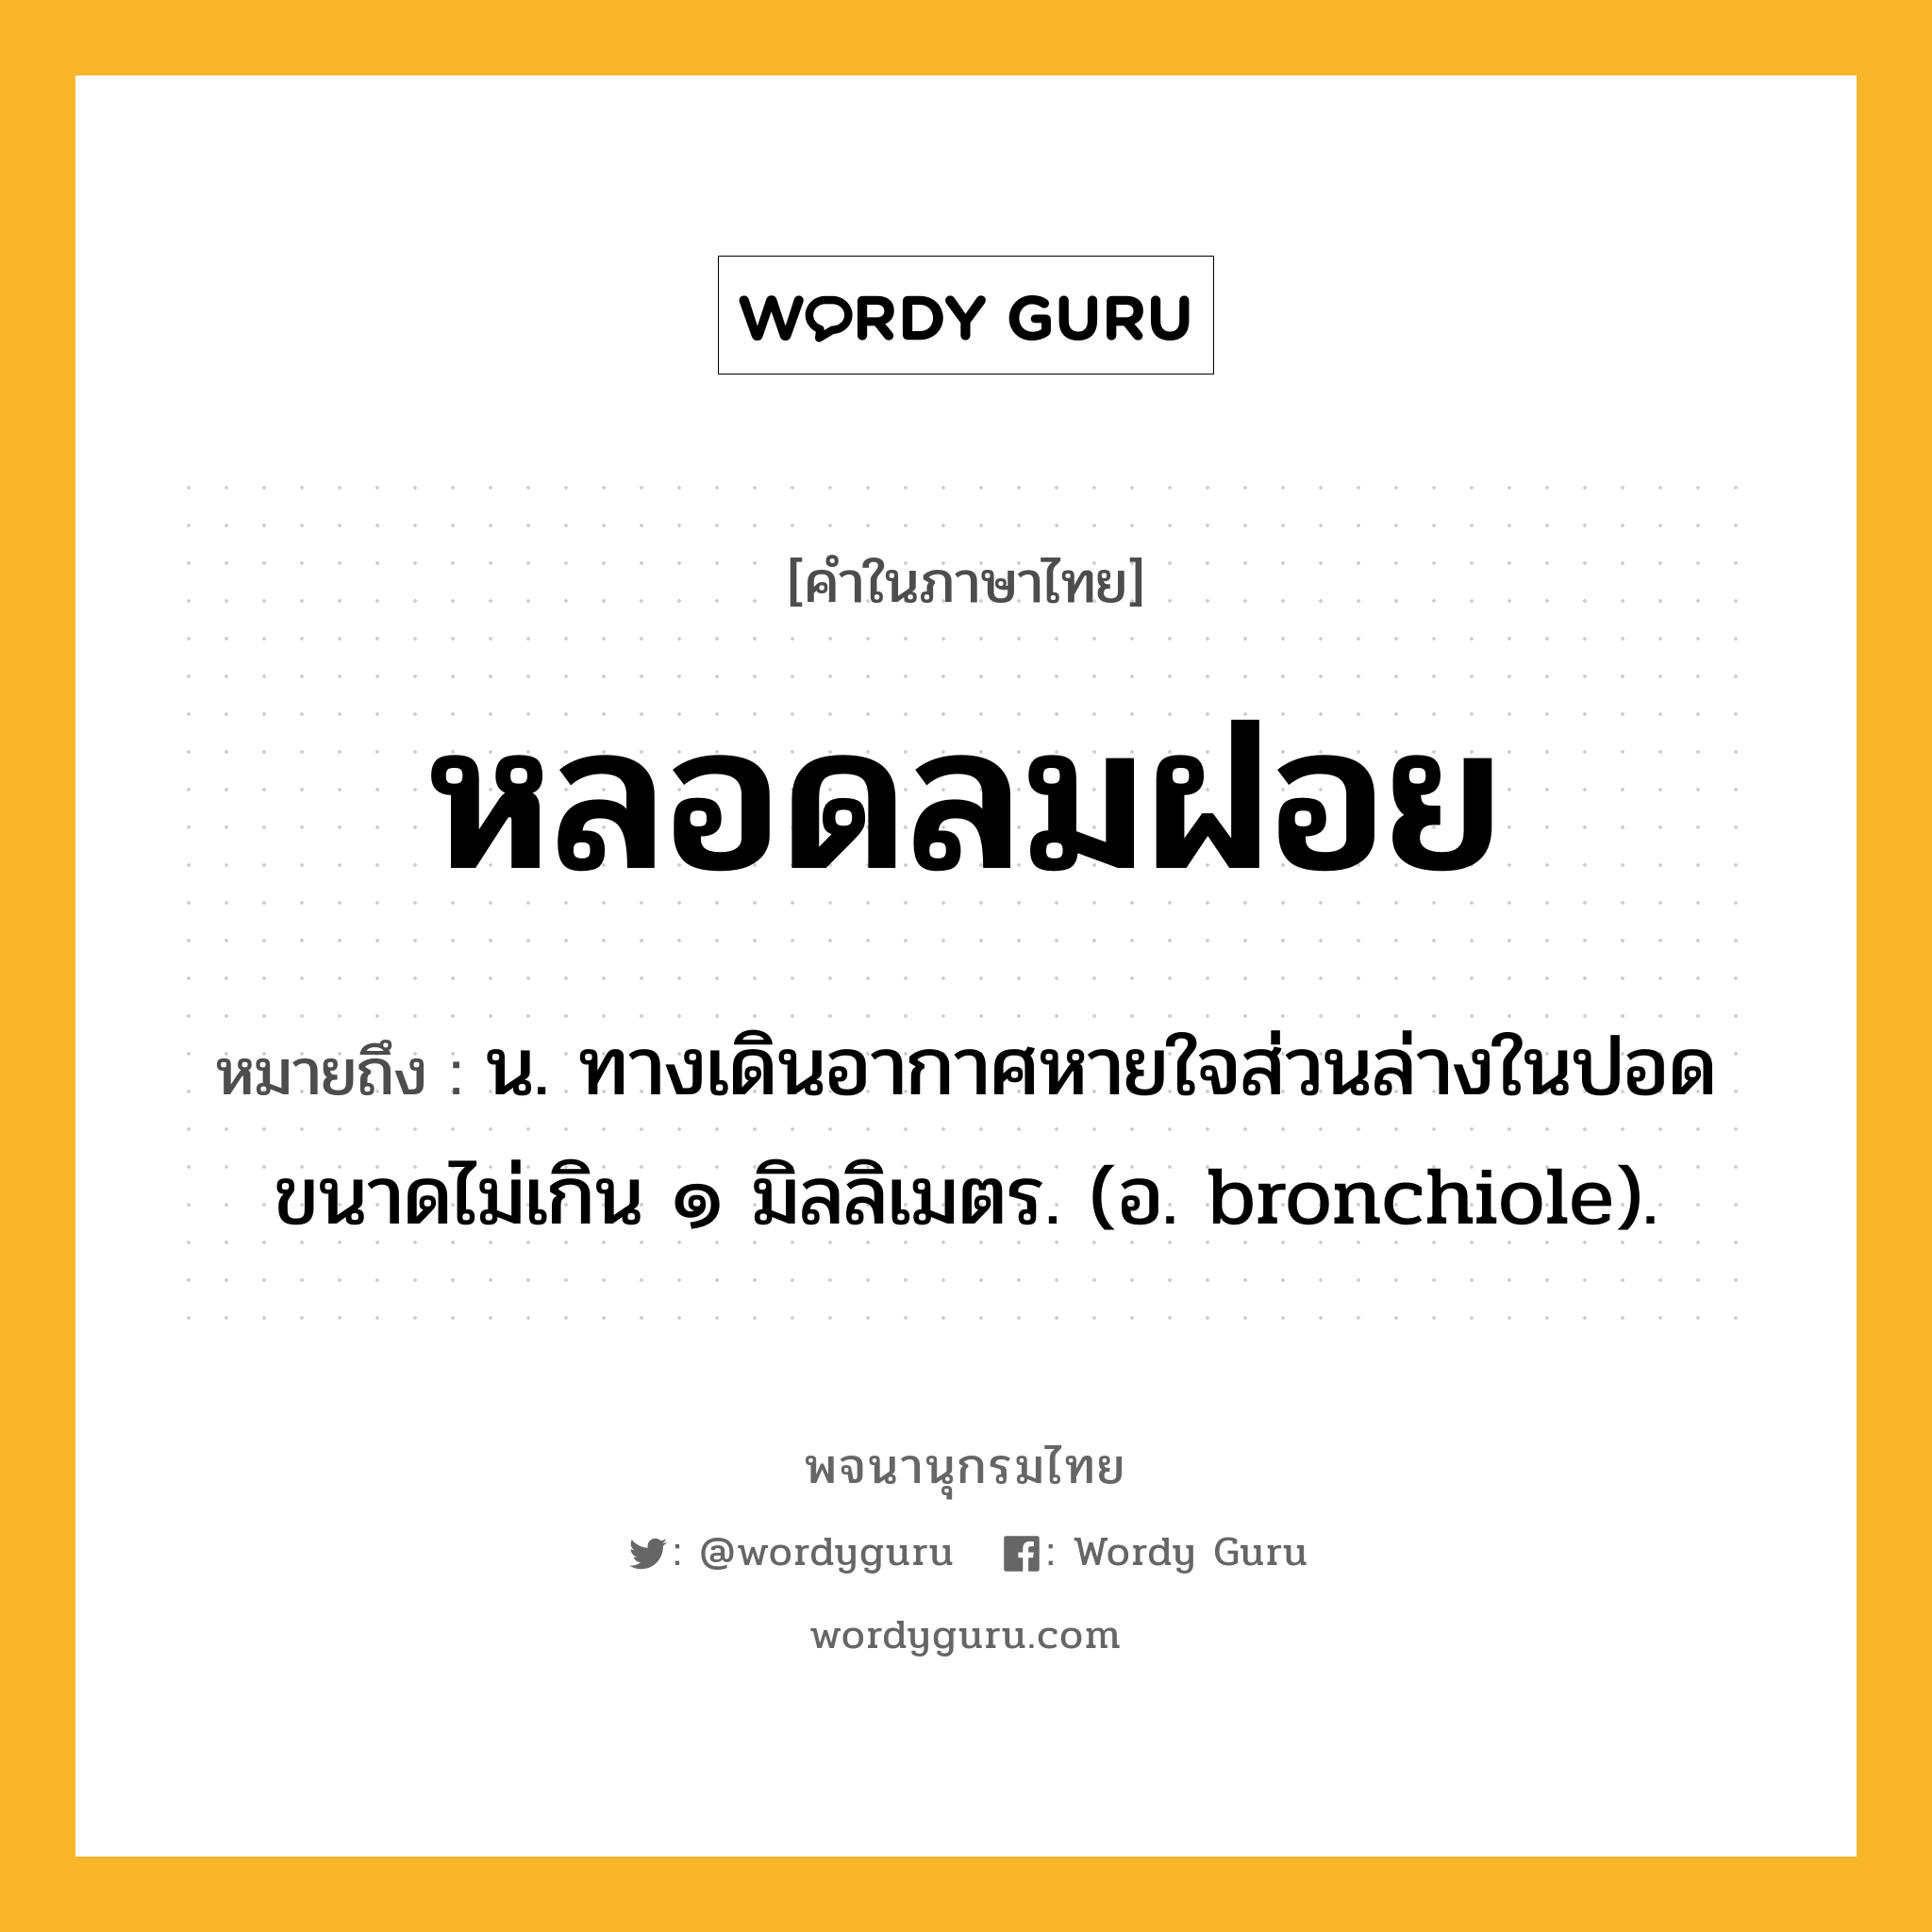 หลอดลมฝอย หมายถึงอะไร?, คำในภาษาไทย หลอดลมฝอย หมายถึง น. ทางเดินอากาศหายใจส่วนล่างในปอด ขนาดไม่เกิน ๑ มิลลิเมตร. (อ. bronchiole).